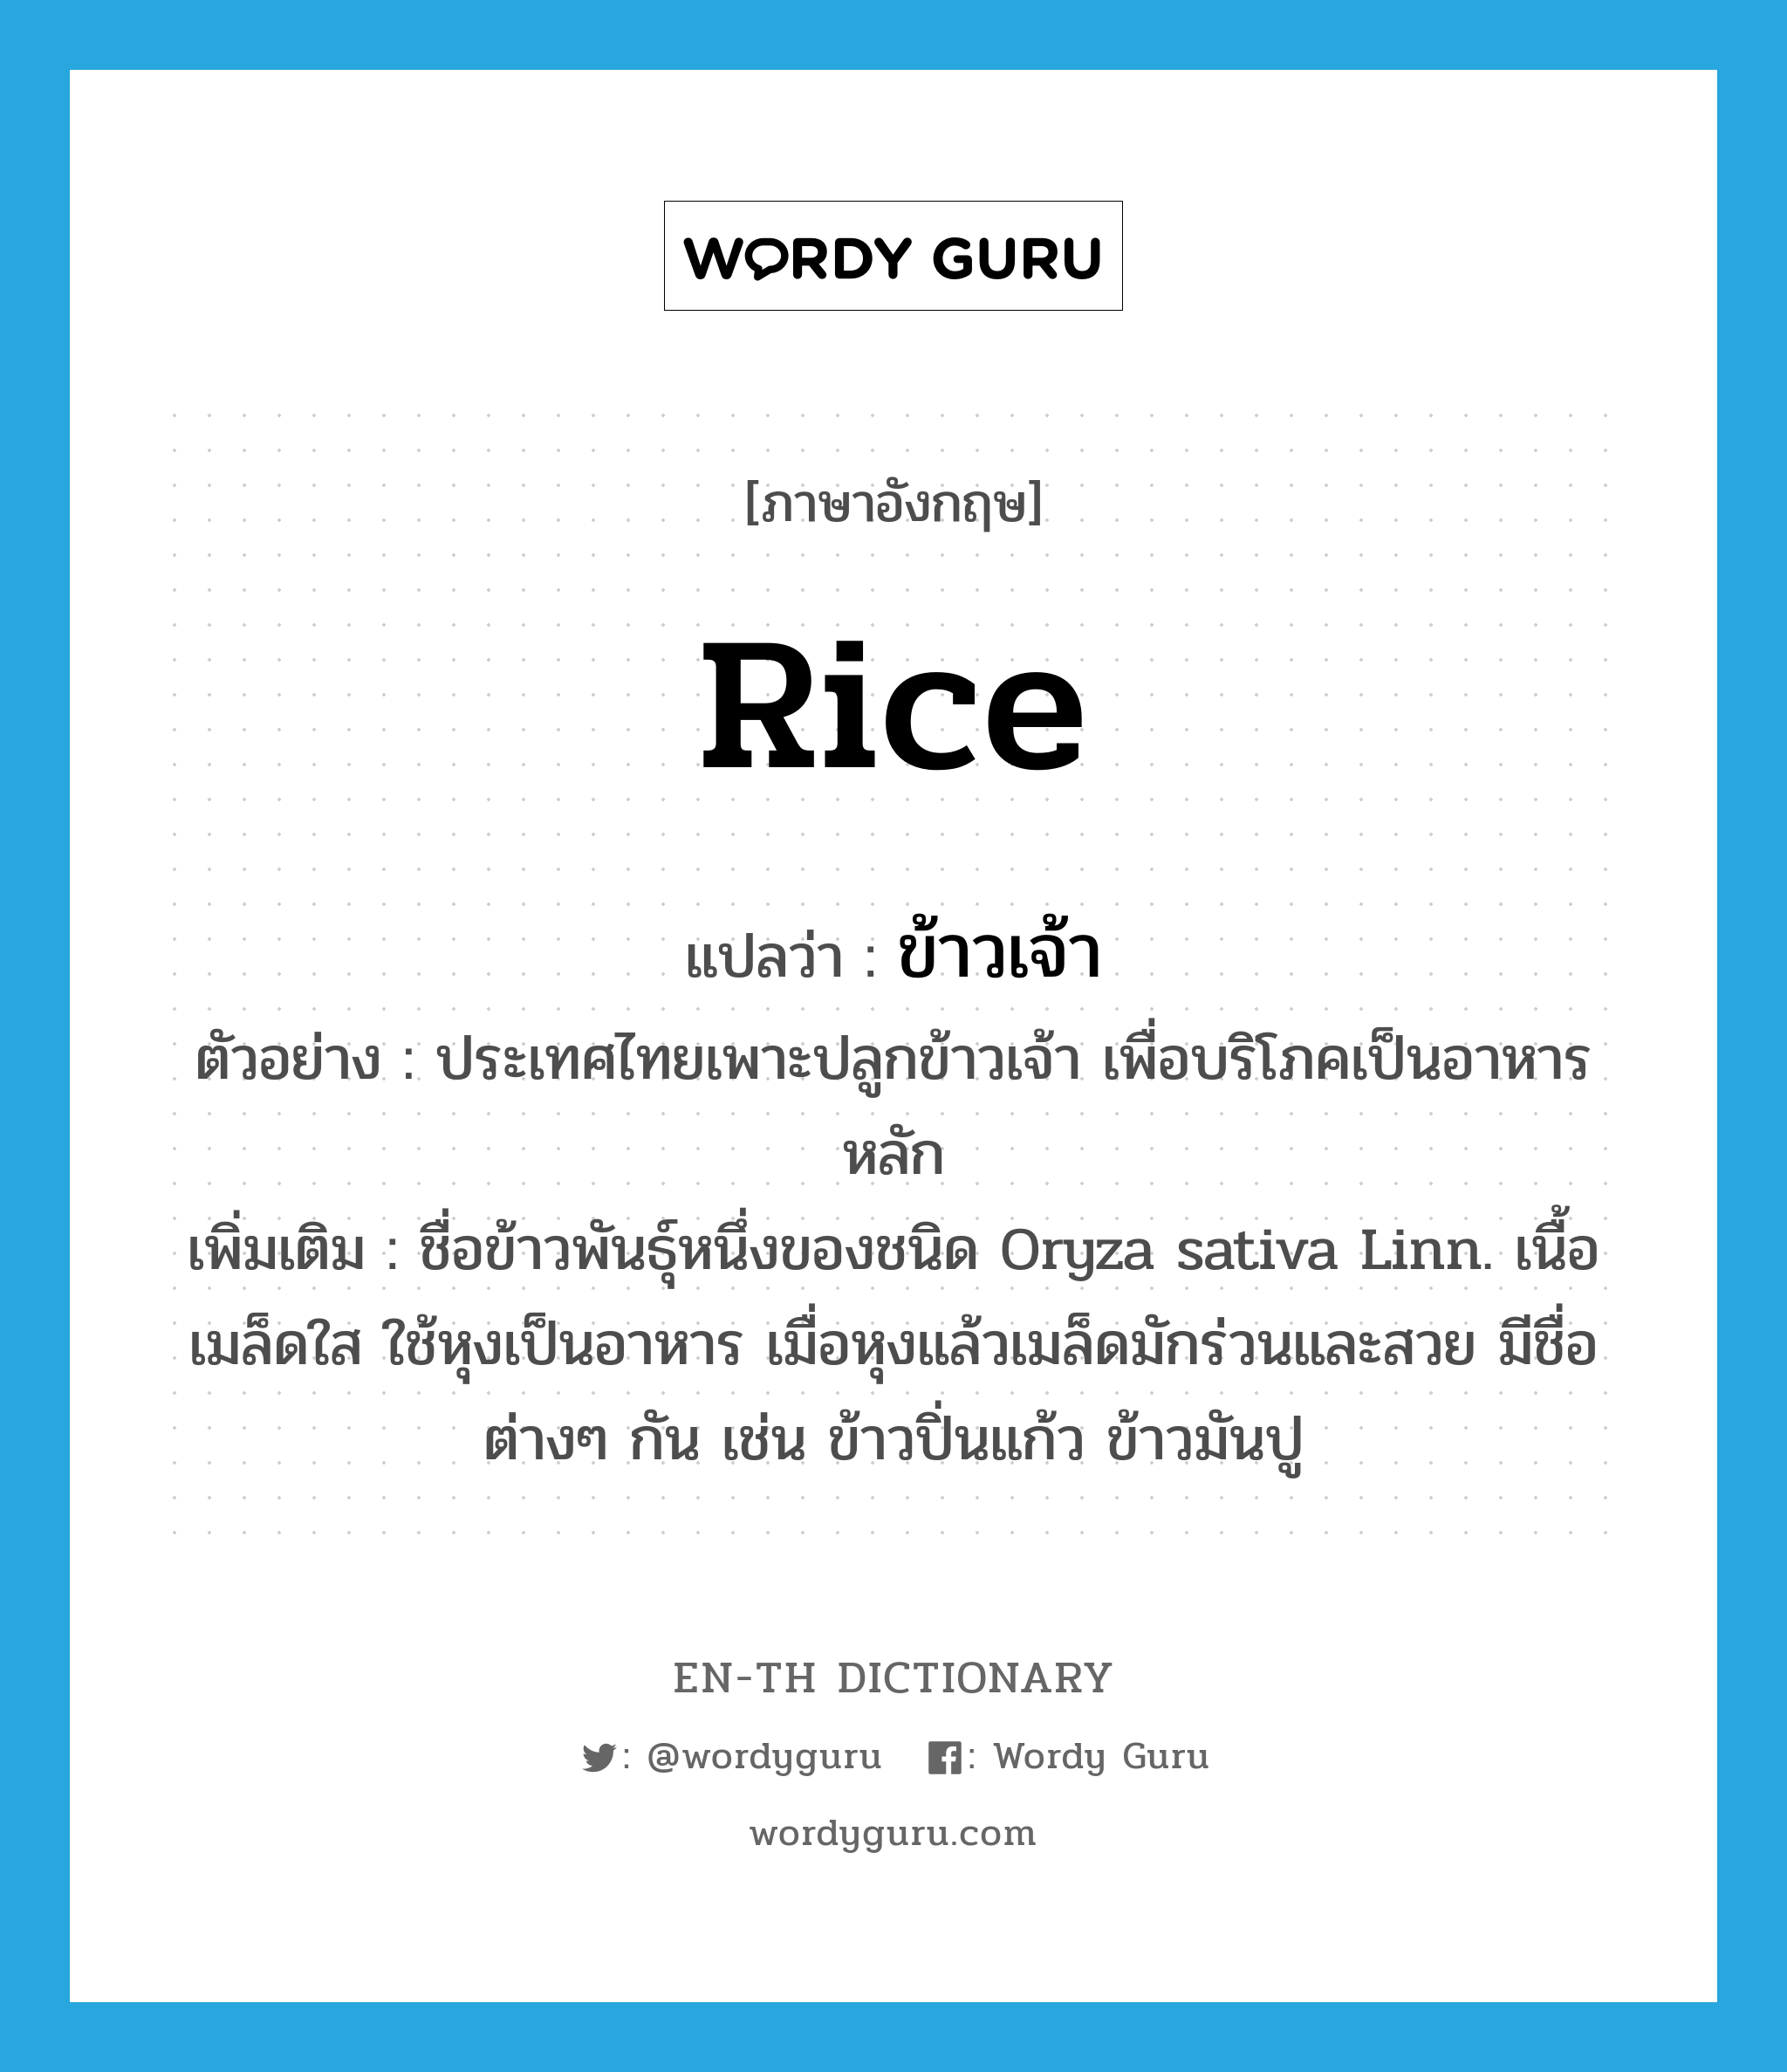 ข้าวเจ้า ภาษาอังกฤษ?, คำศัพท์ภาษาอังกฤษ ข้าวเจ้า แปลว่า rice ประเภท N ตัวอย่าง ประเทศไทยเพาะปลูกข้าวเจ้า เพื่อบริโภคเป็นอาหารหลัก เพิ่มเติม ชื่อข้าวพันธุ์หนึ่งของชนิด Oryza sativa Linn. เนื้อเมล็ดใส ใช้หุงเป็นอาหาร เมื่อหุงแล้วเมล็ดมักร่วนและสวย มีชื่อต่างๆ กัน เช่น ข้าวปิ่นแก้ว ข้าวมันปู หมวด N